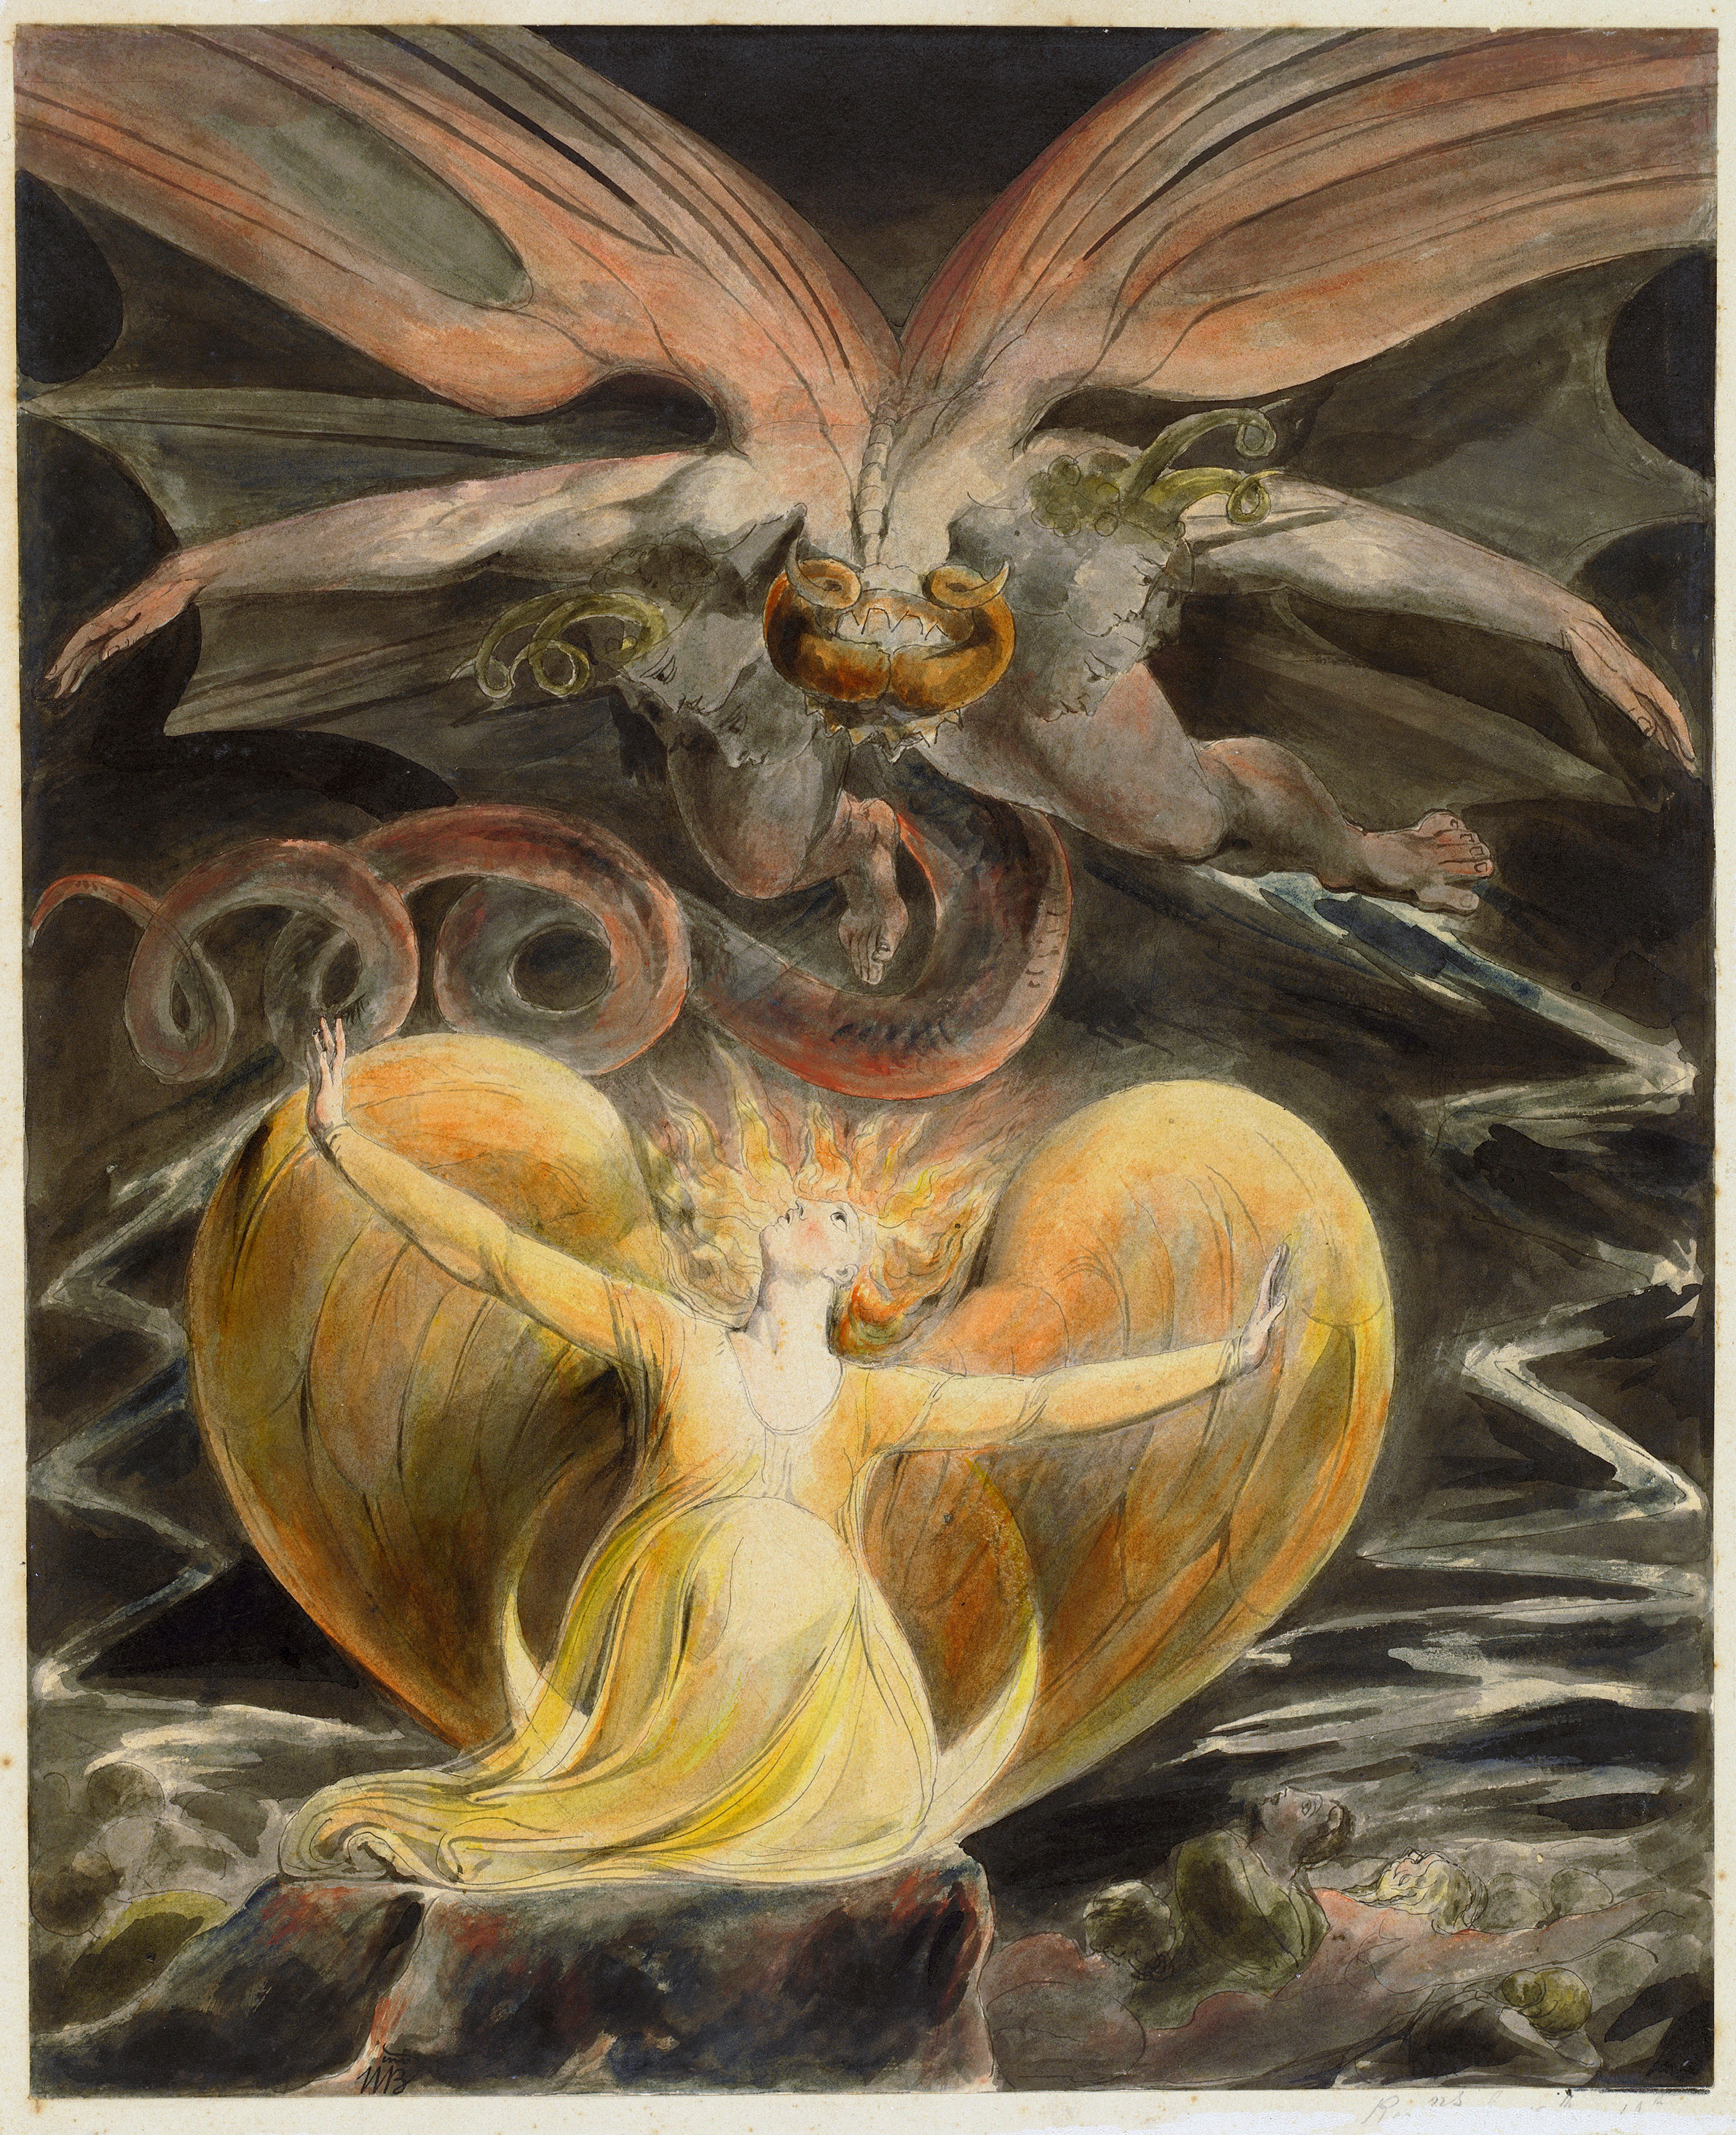 A nagy vörös sárkány és a napfénybe öltözött nő by William Blake - 1805 - 40.8 x 33.7 cm 